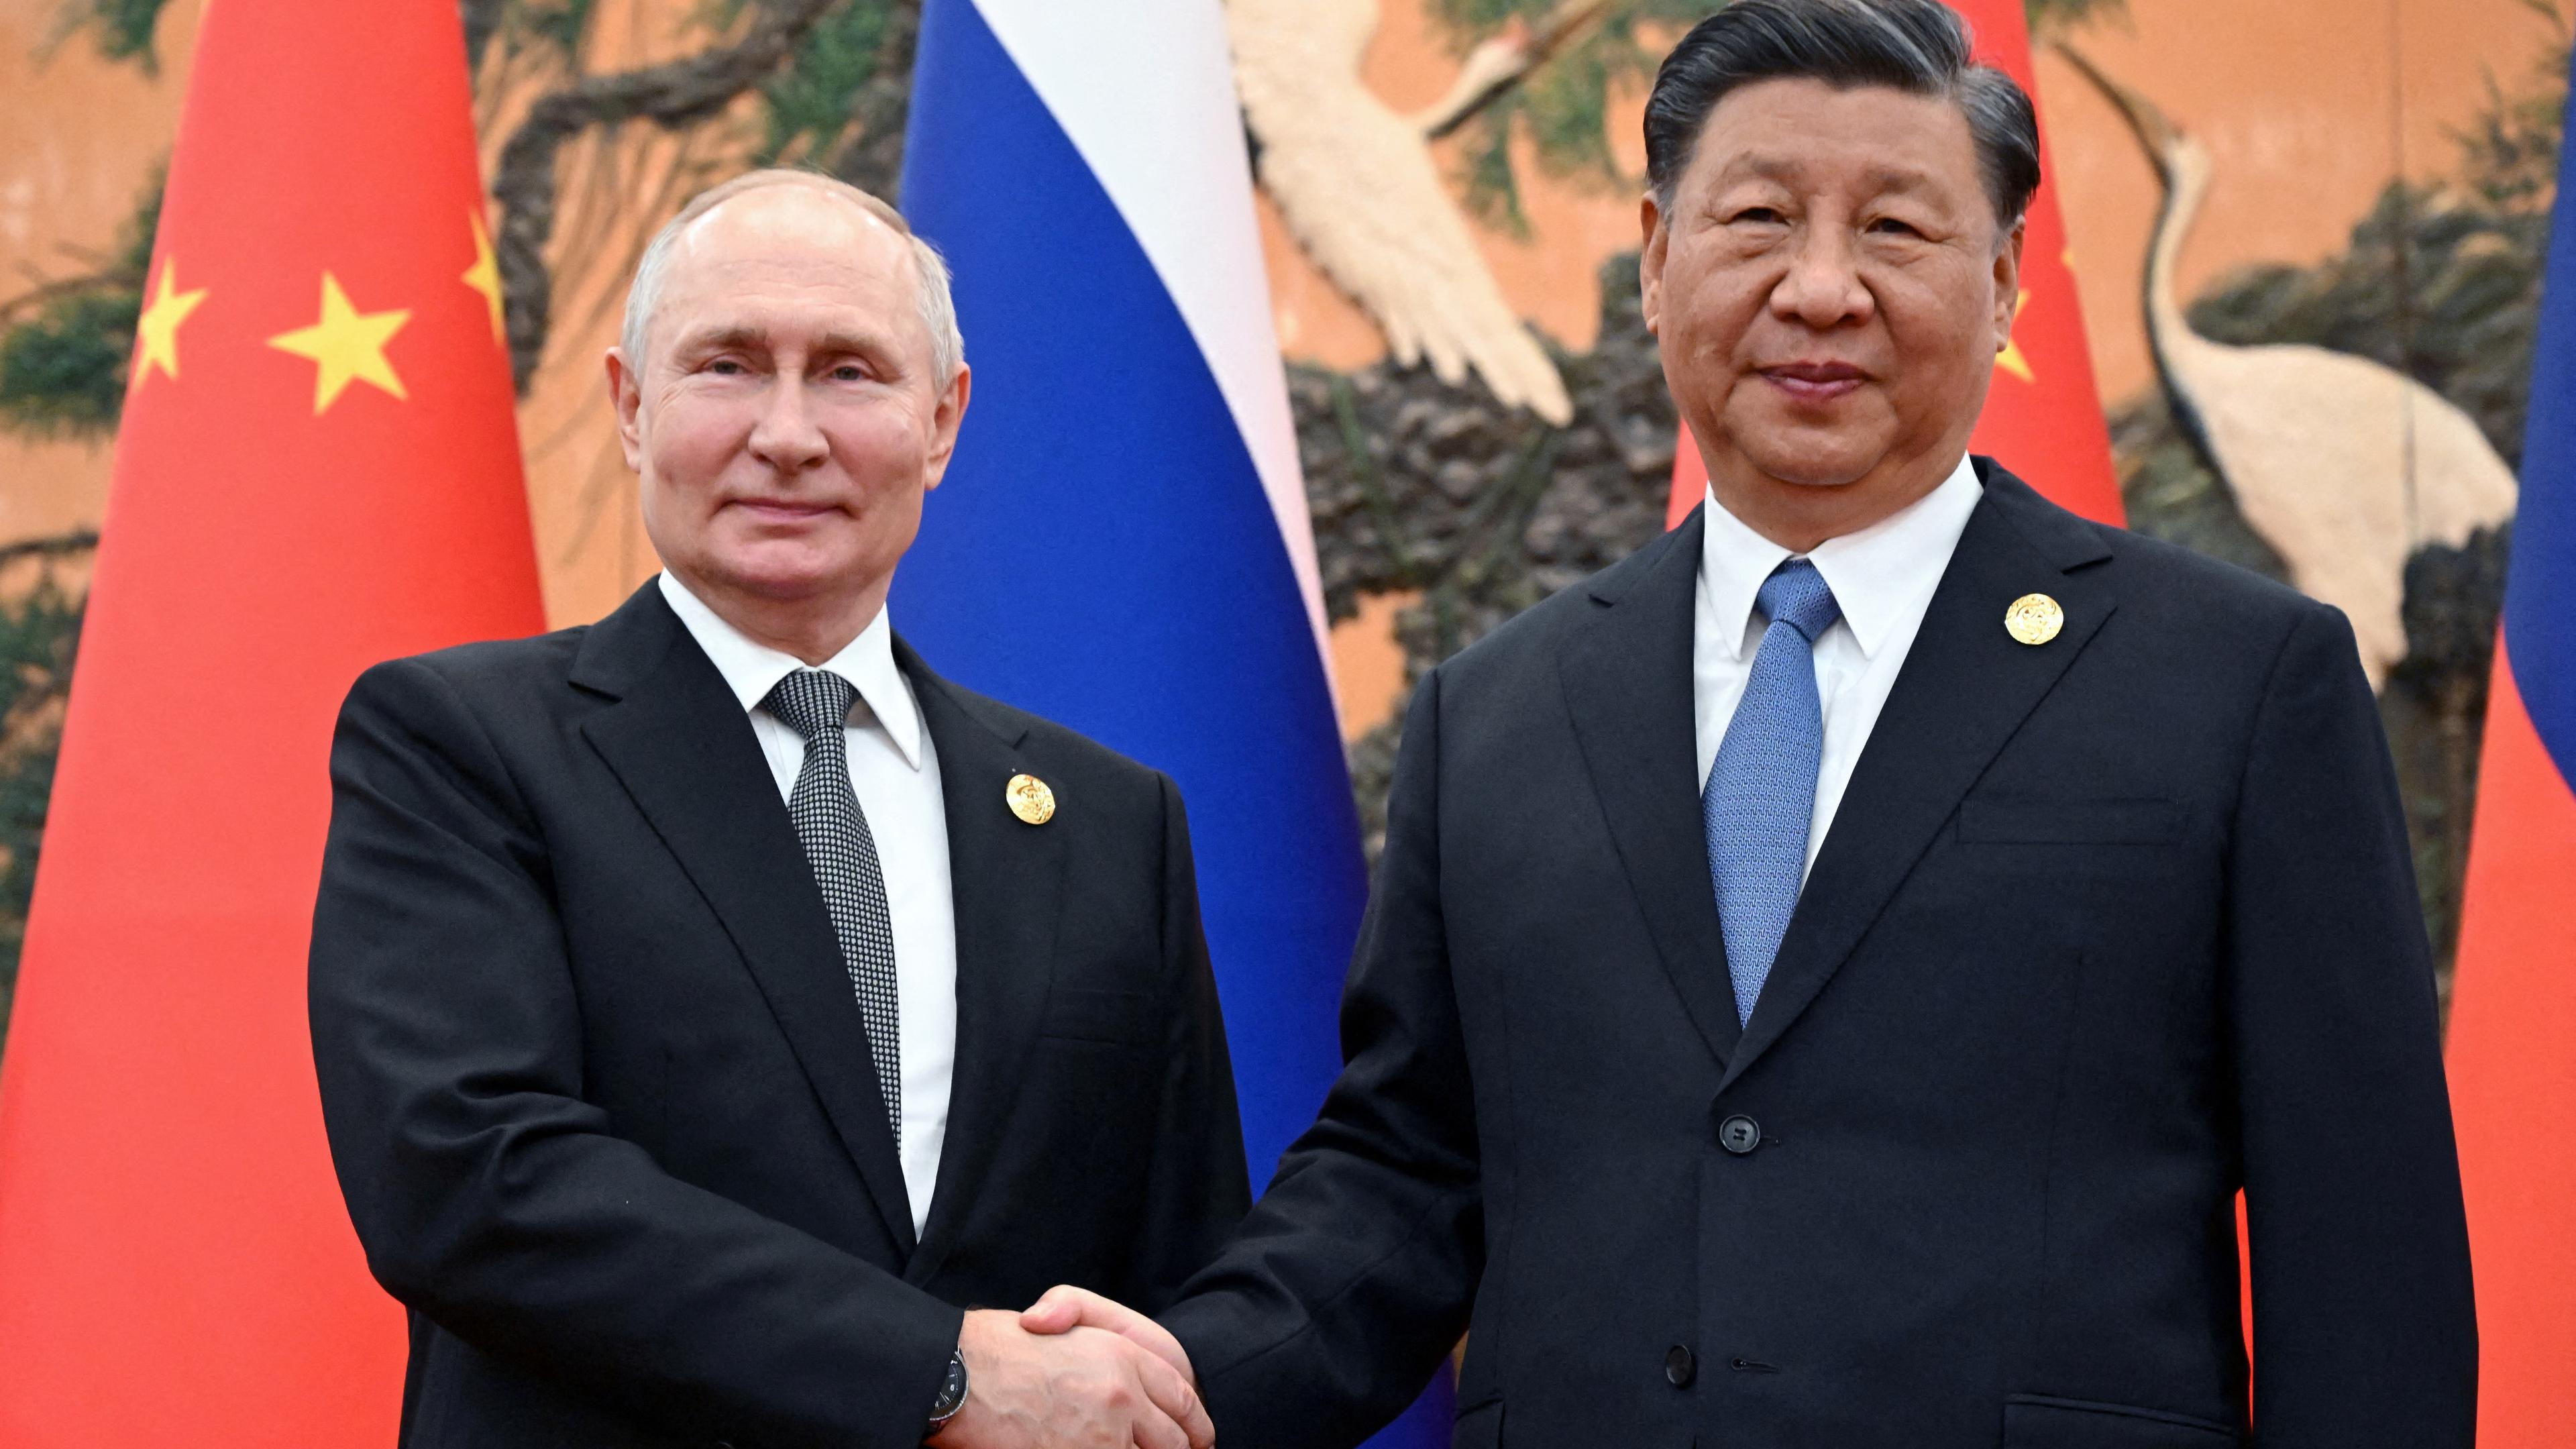 18.10.23, Beijing: Putin und Xi geben sich einen Handschlag vor den Fahnen ihrer Länder.